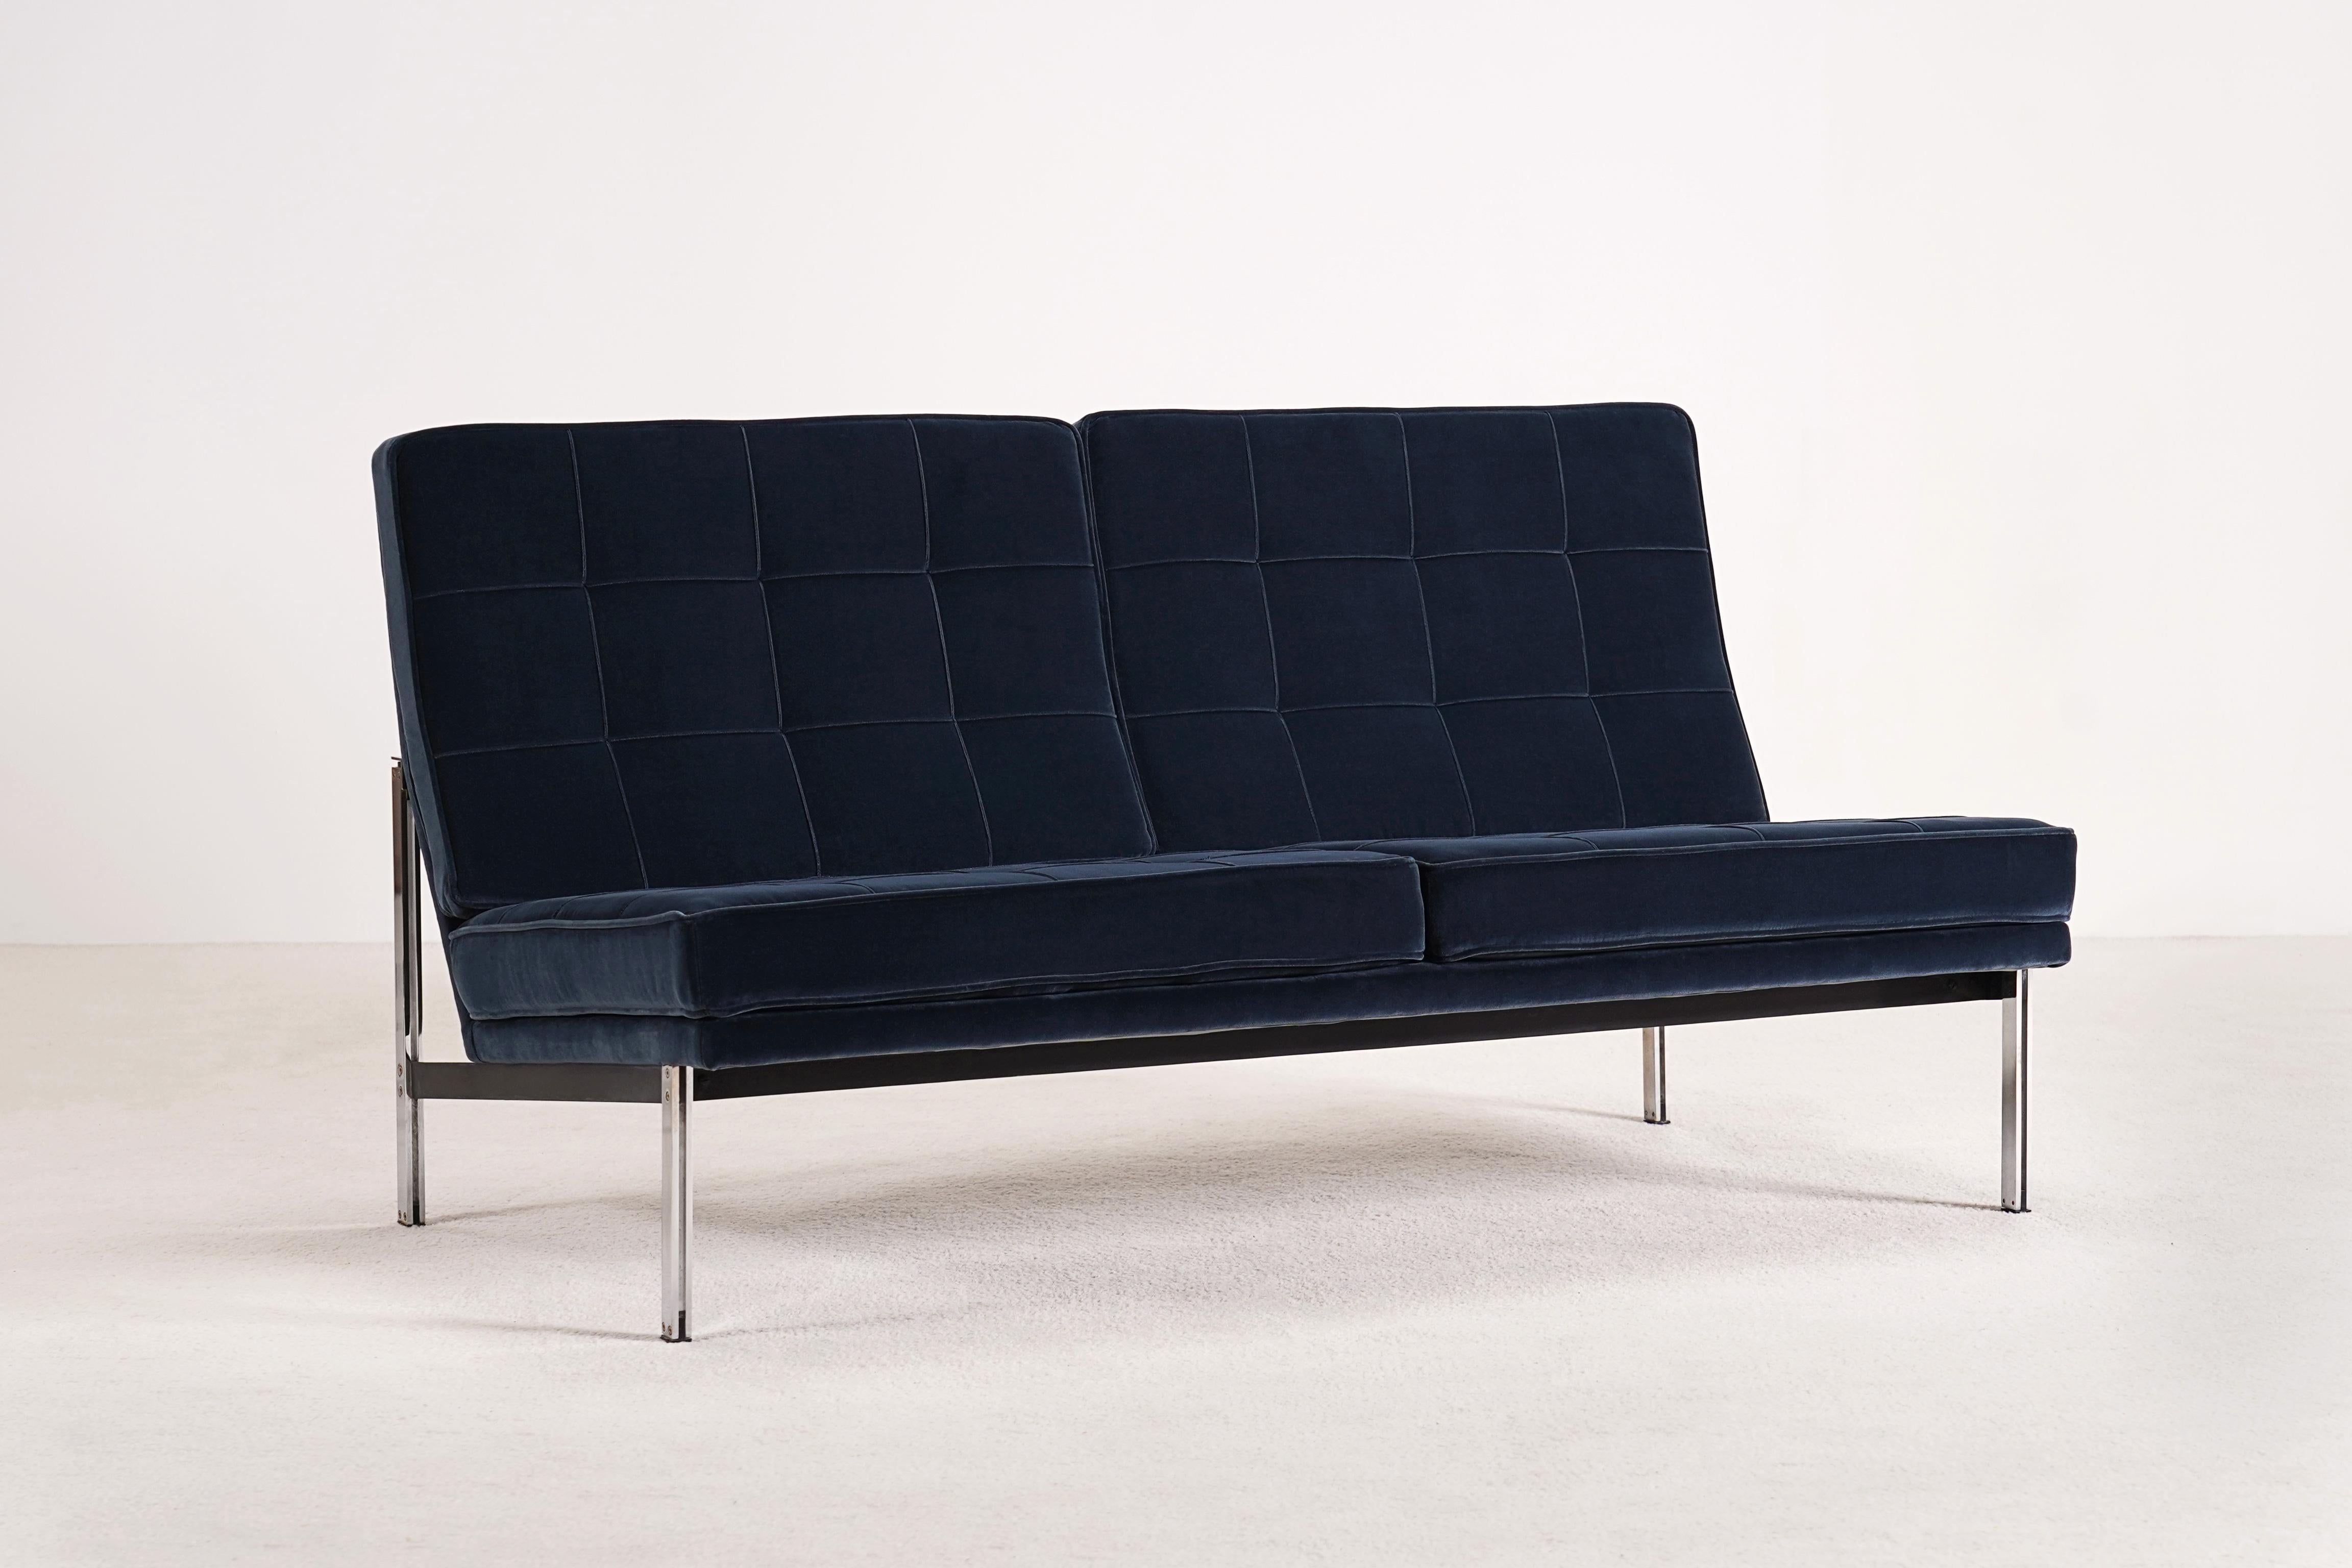 Schönes Zweisitzer-Sofa Modell 52, auch bekannt als 'Parallel Bar', entworfen von Florence Knoll im Jahr 1954 und hergestellt von Knoll International von 1955 bis 1973. Dieses Sofa ist eine Ausgabe aus den frühen 60er Jahren.

Ausgezeichneter